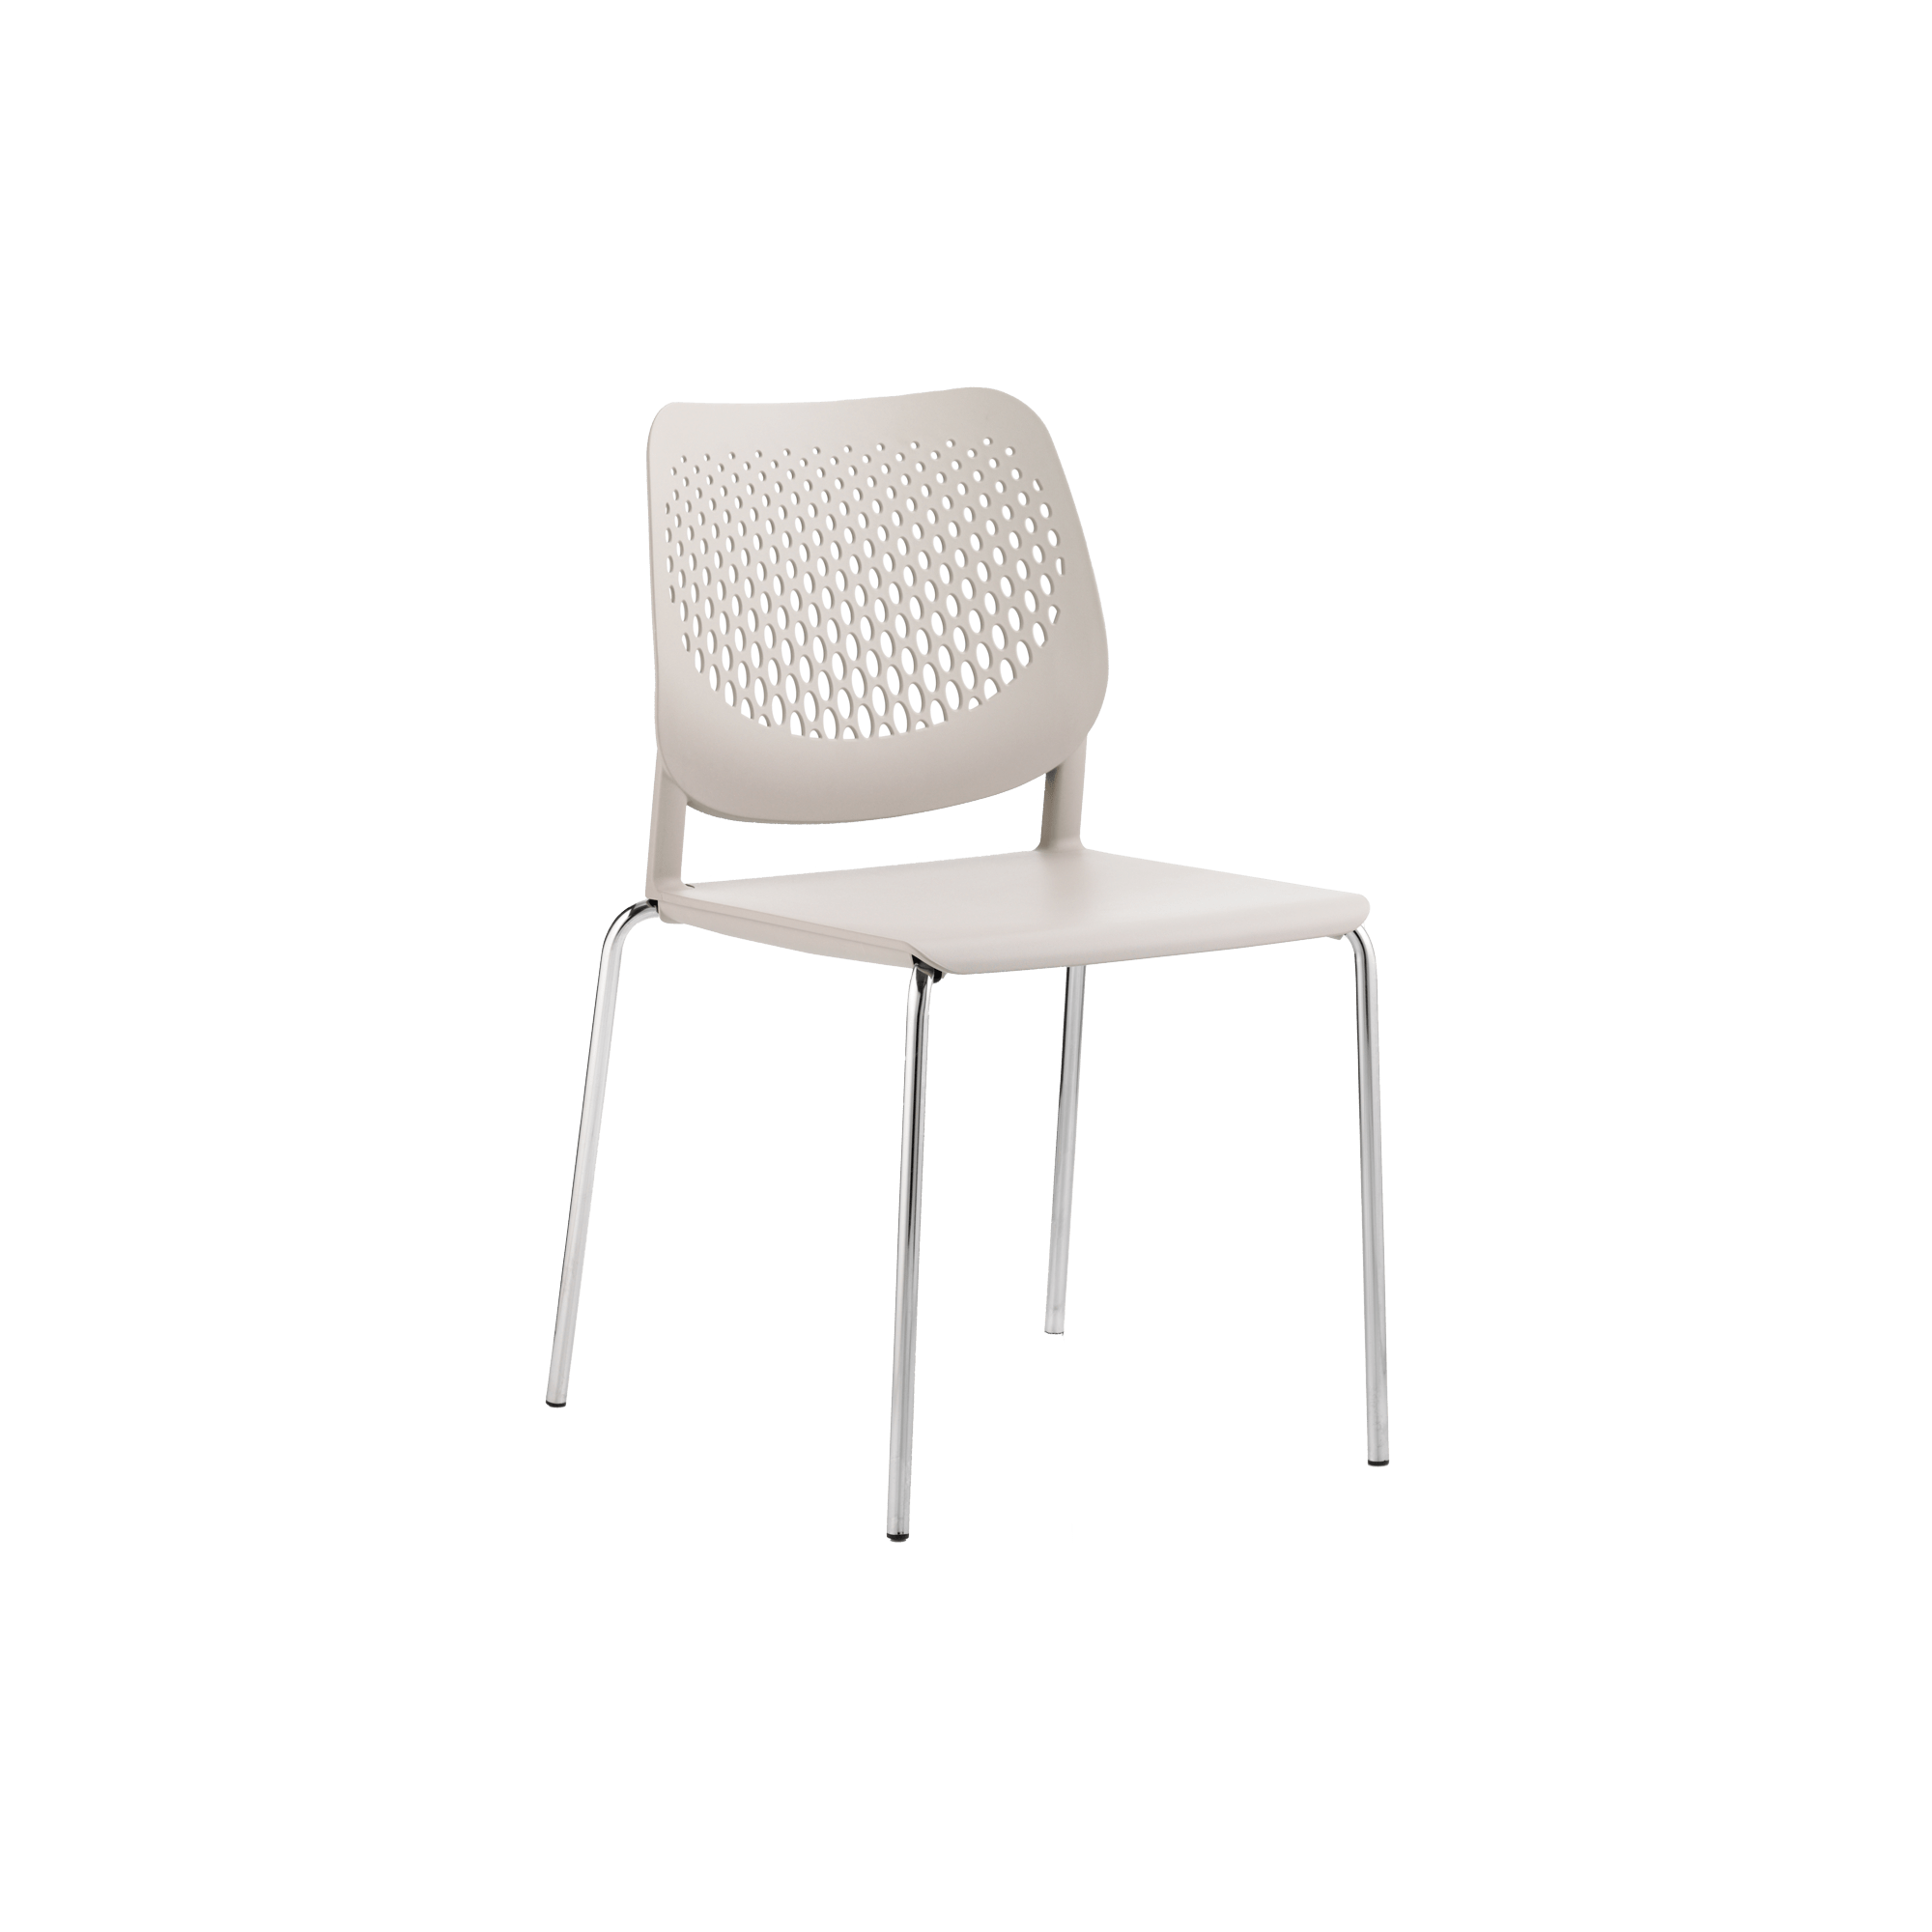 A white plastic chair